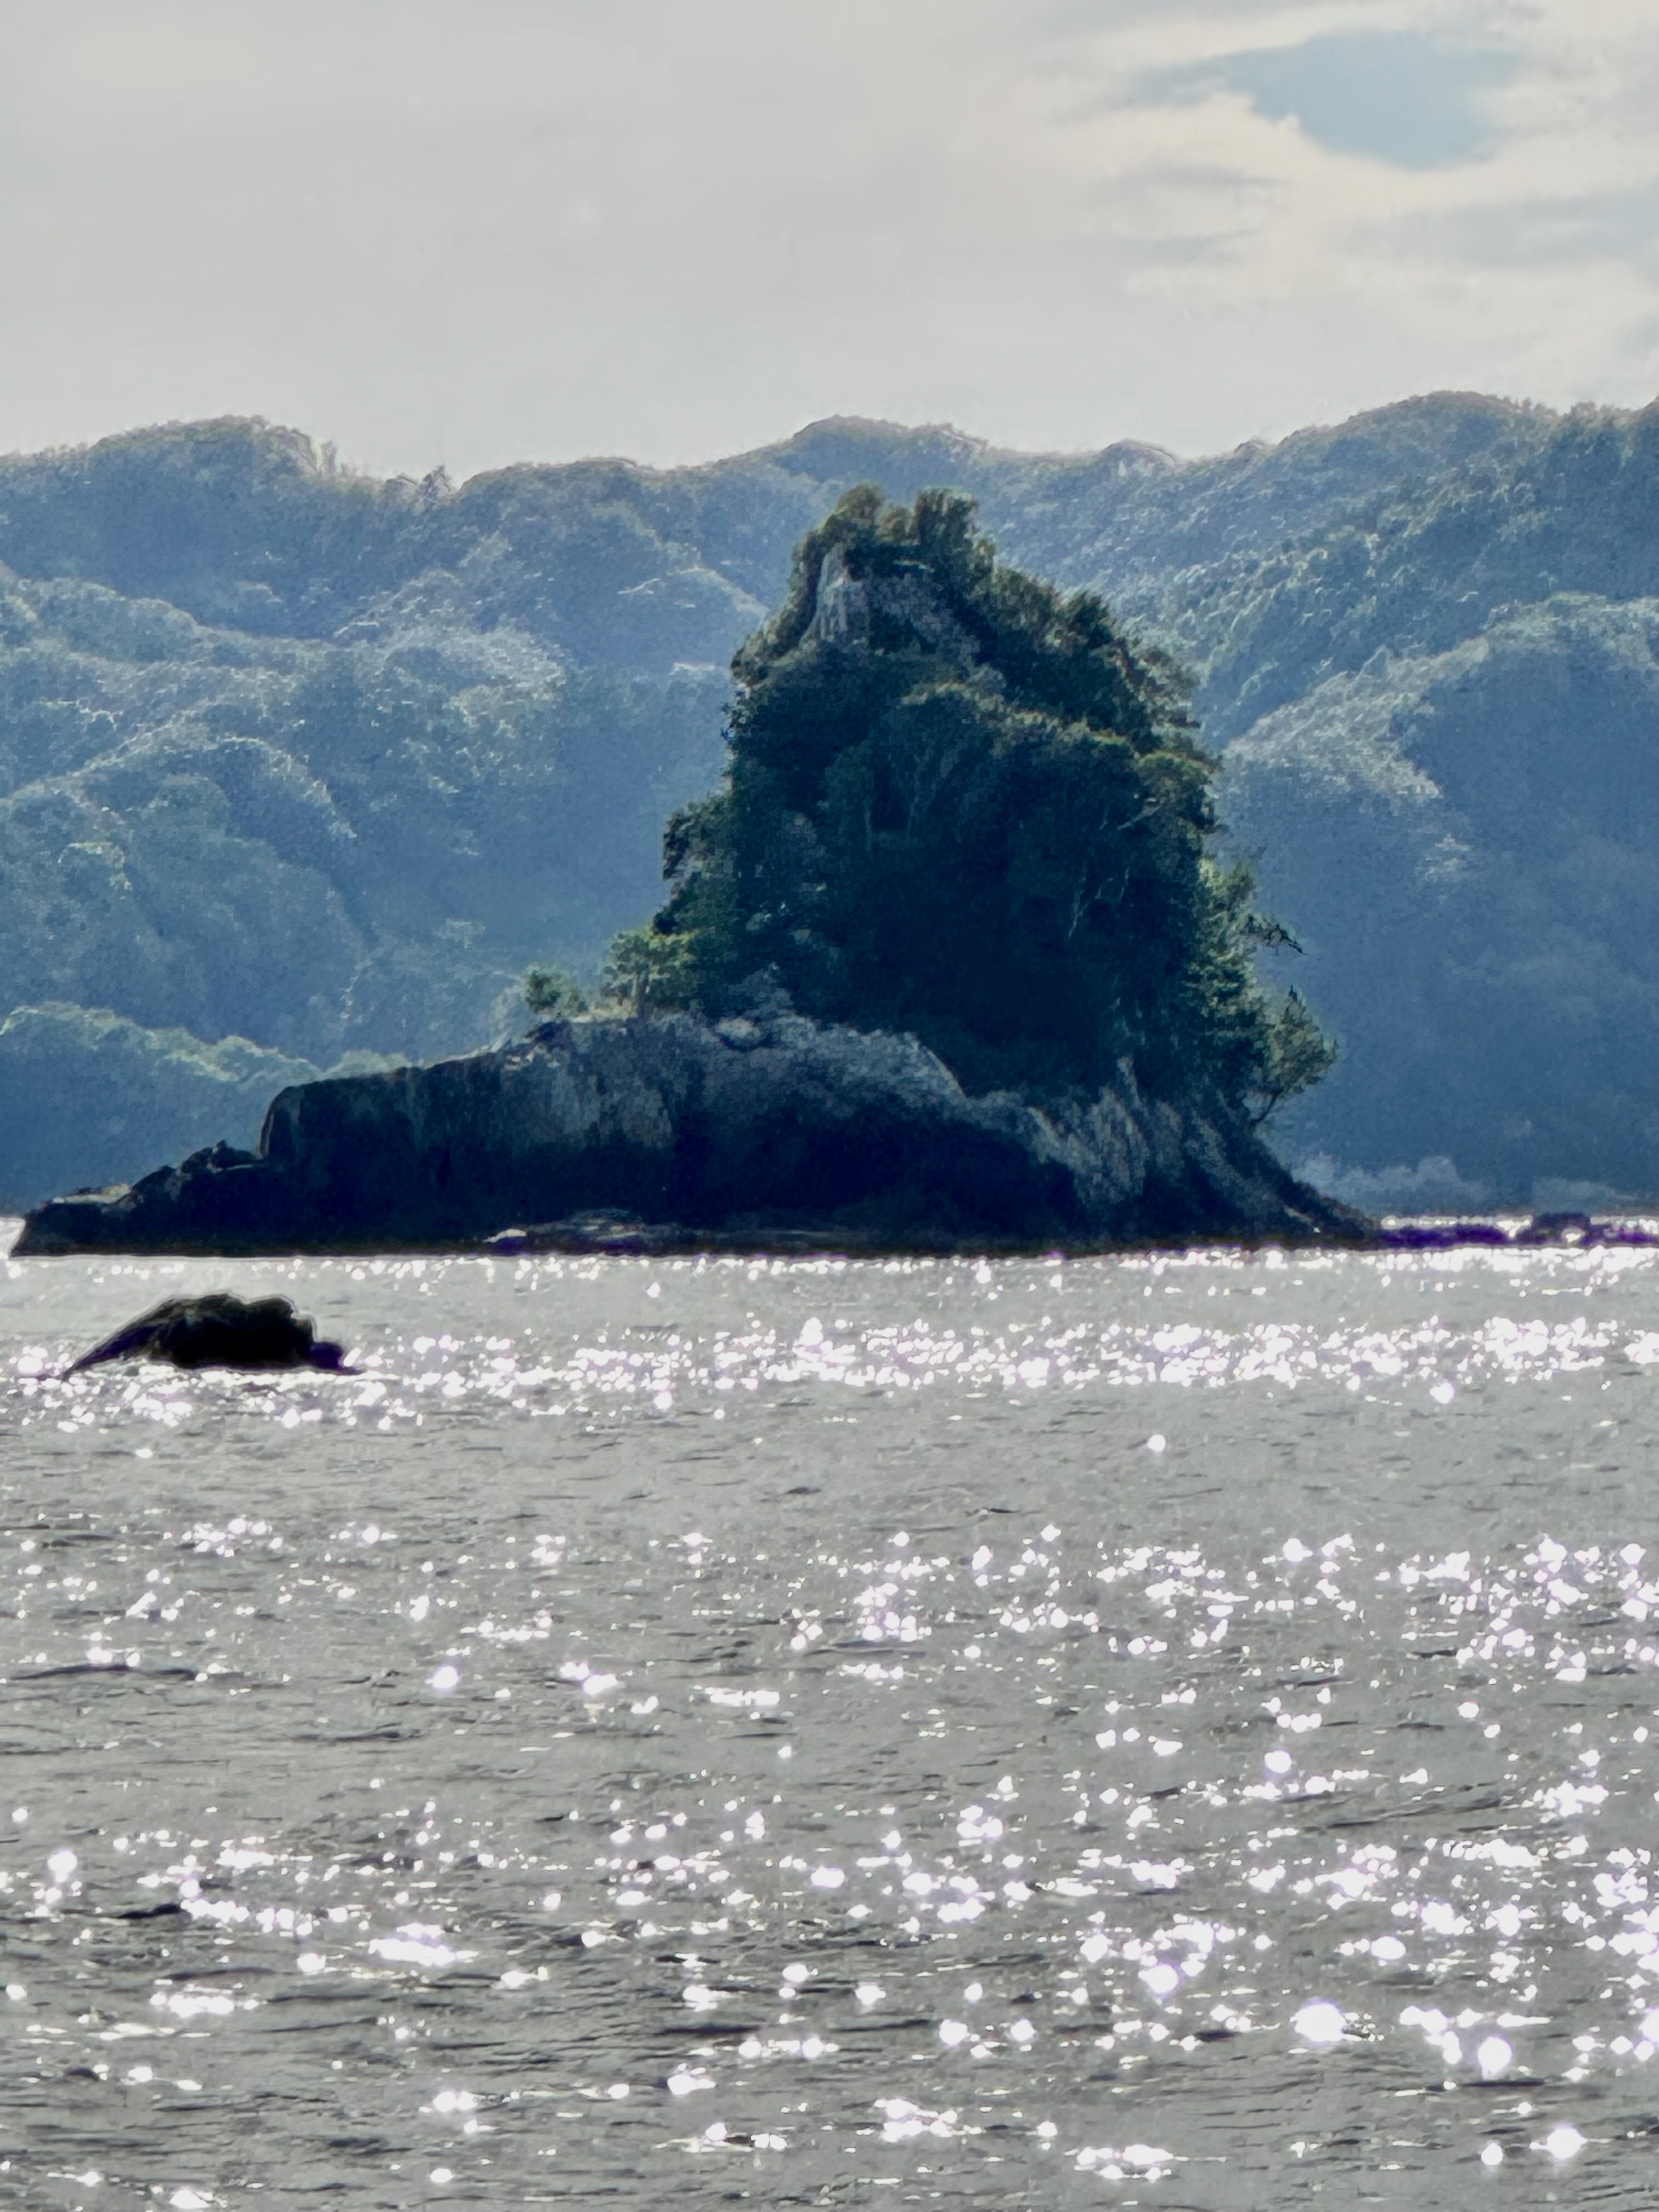 ライオン島's image 1